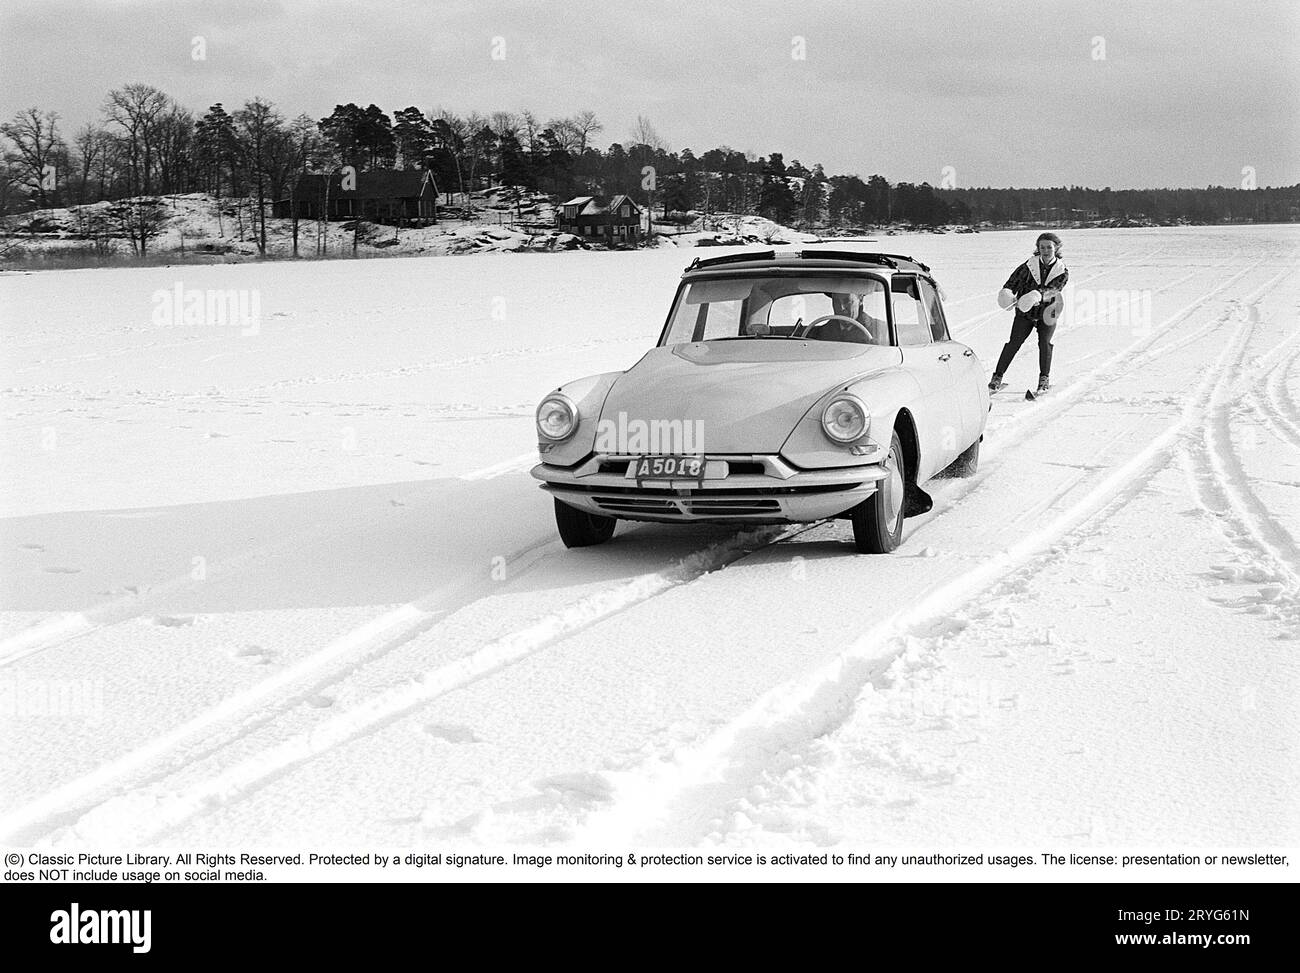 Ein Wintertag in den 1960er Jahren Eine Frau fährt hinter einem Auto. A Citroën. Es muss ziemlich dickes Eis auf dem See gewesen sein, weil der Fahrer es wagte, auf dem Eis zu fahren, aber selbst die Frau muss mutig gewesen sein, als sie sicher Geschwindigkeit auf ihren Skiern nahm, als sie an einem Seil mit einem Griff hinter dem Auto an hielt volle Geschwindigkeit. Schweden 1962. Conard Ref. 4561 Stockfoto